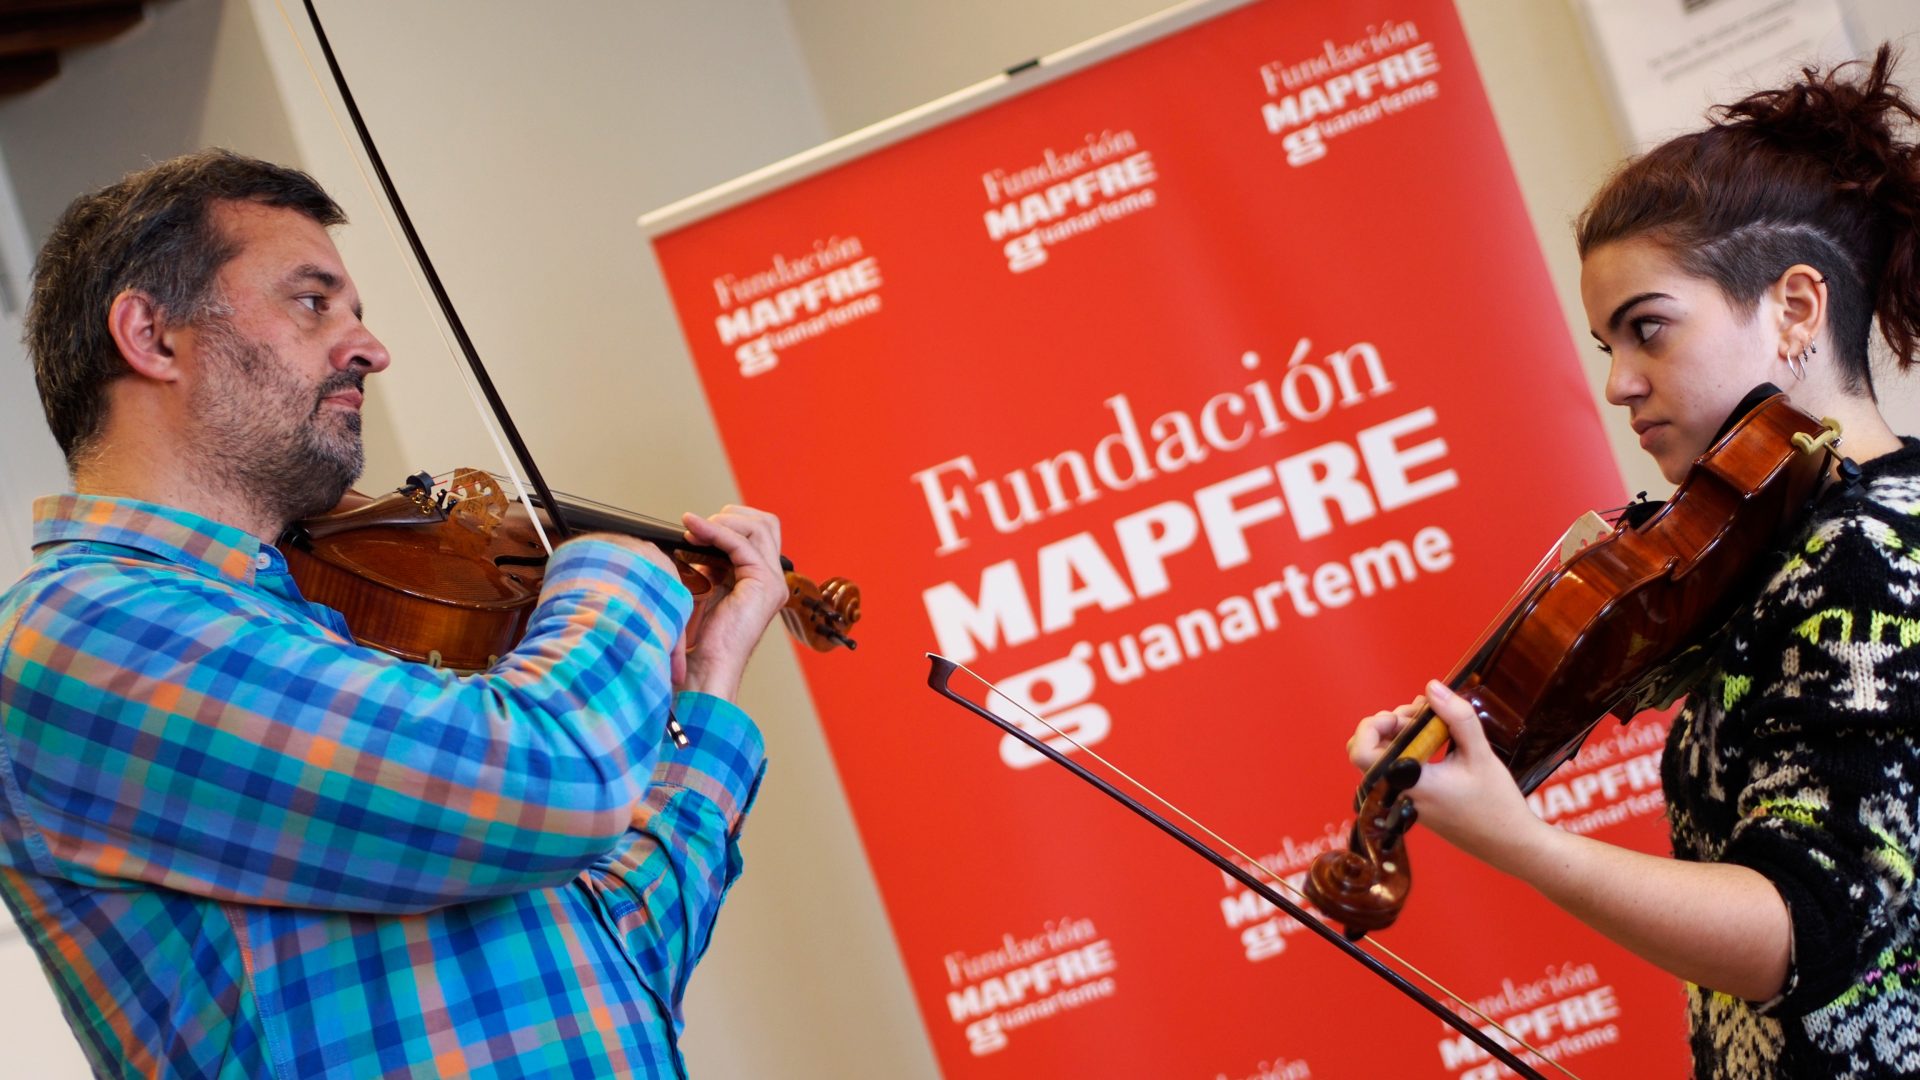 Comienzan las clases magistrales en la sede de la Fundación MAPFRE Guanarteme